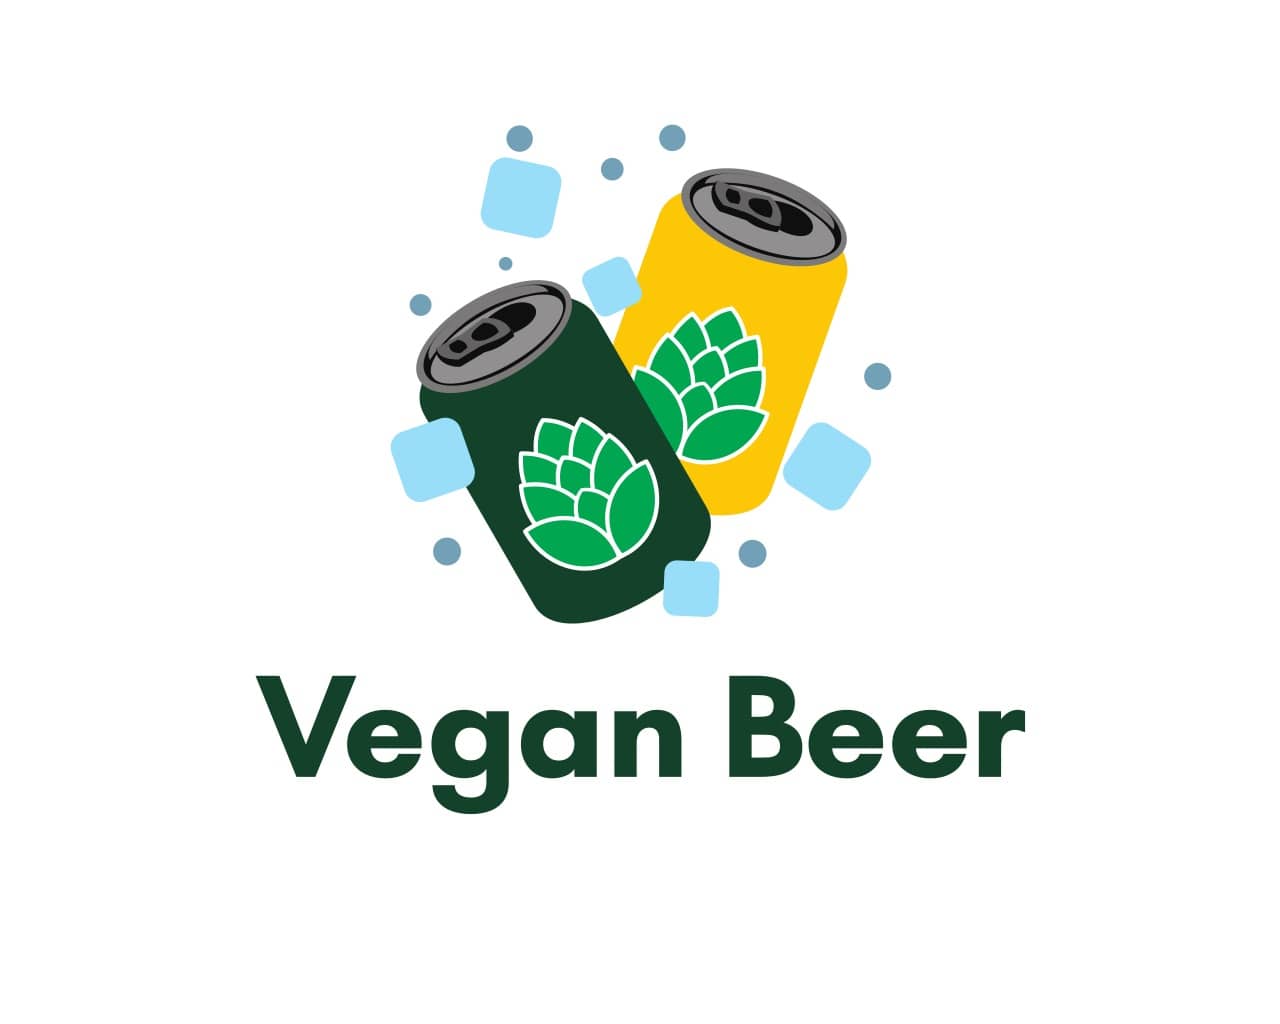 Vegan Beer: Discover Delicious Vegan Beers